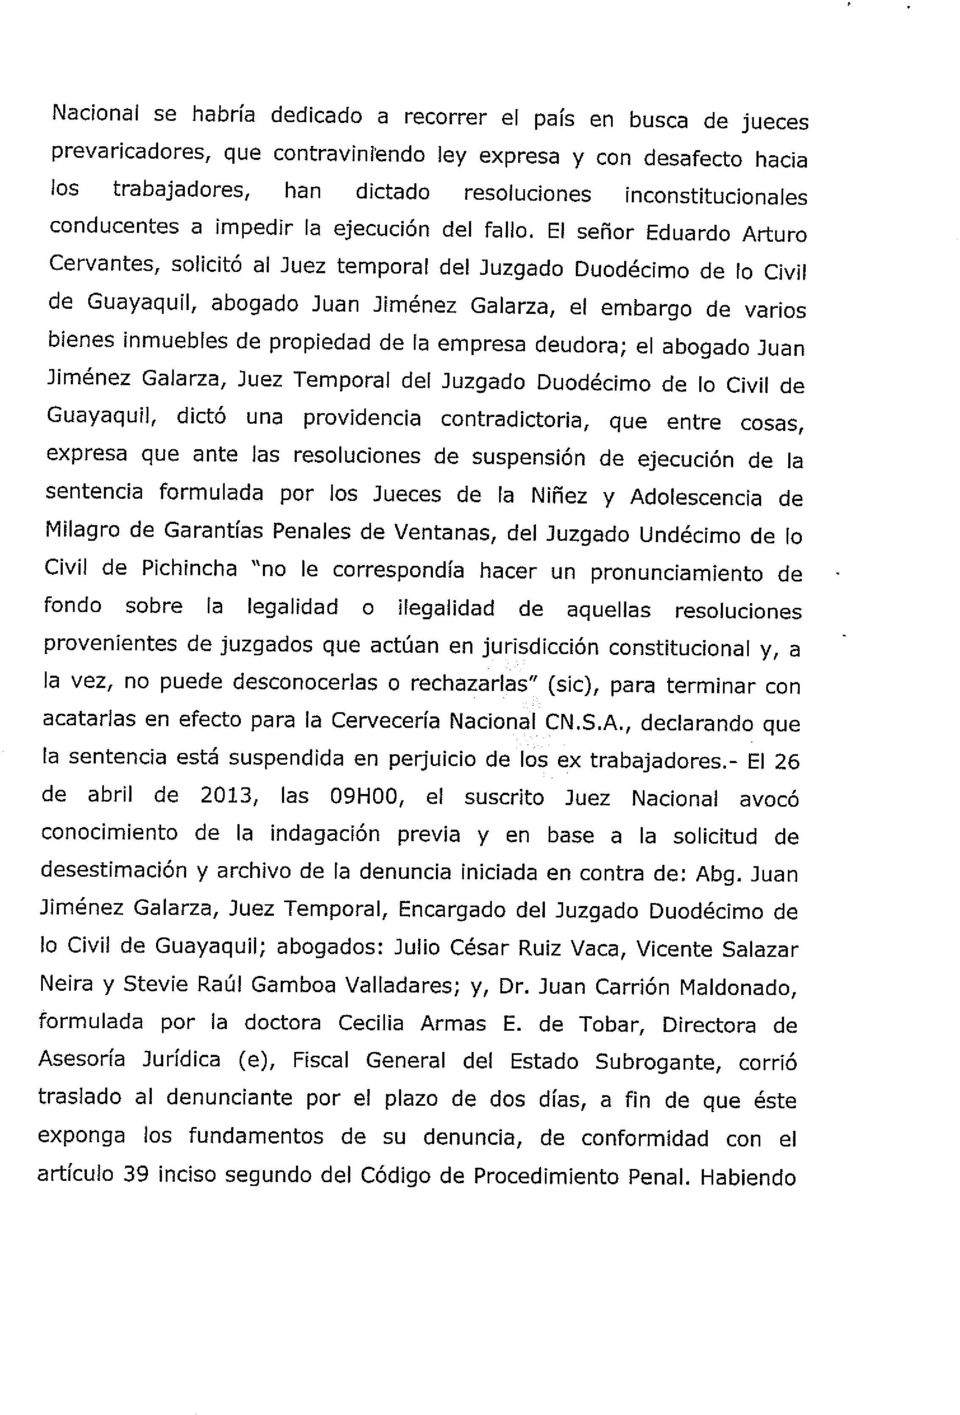 El señor Eduardo Arturo Cervantes, solicitó al Juez temporal del Juzgado Duodécimo de lo Civil de Guayaquil, abogado Juan Jiménez Galarza, el embargo de varios bienes inmuebles de propiedad de la